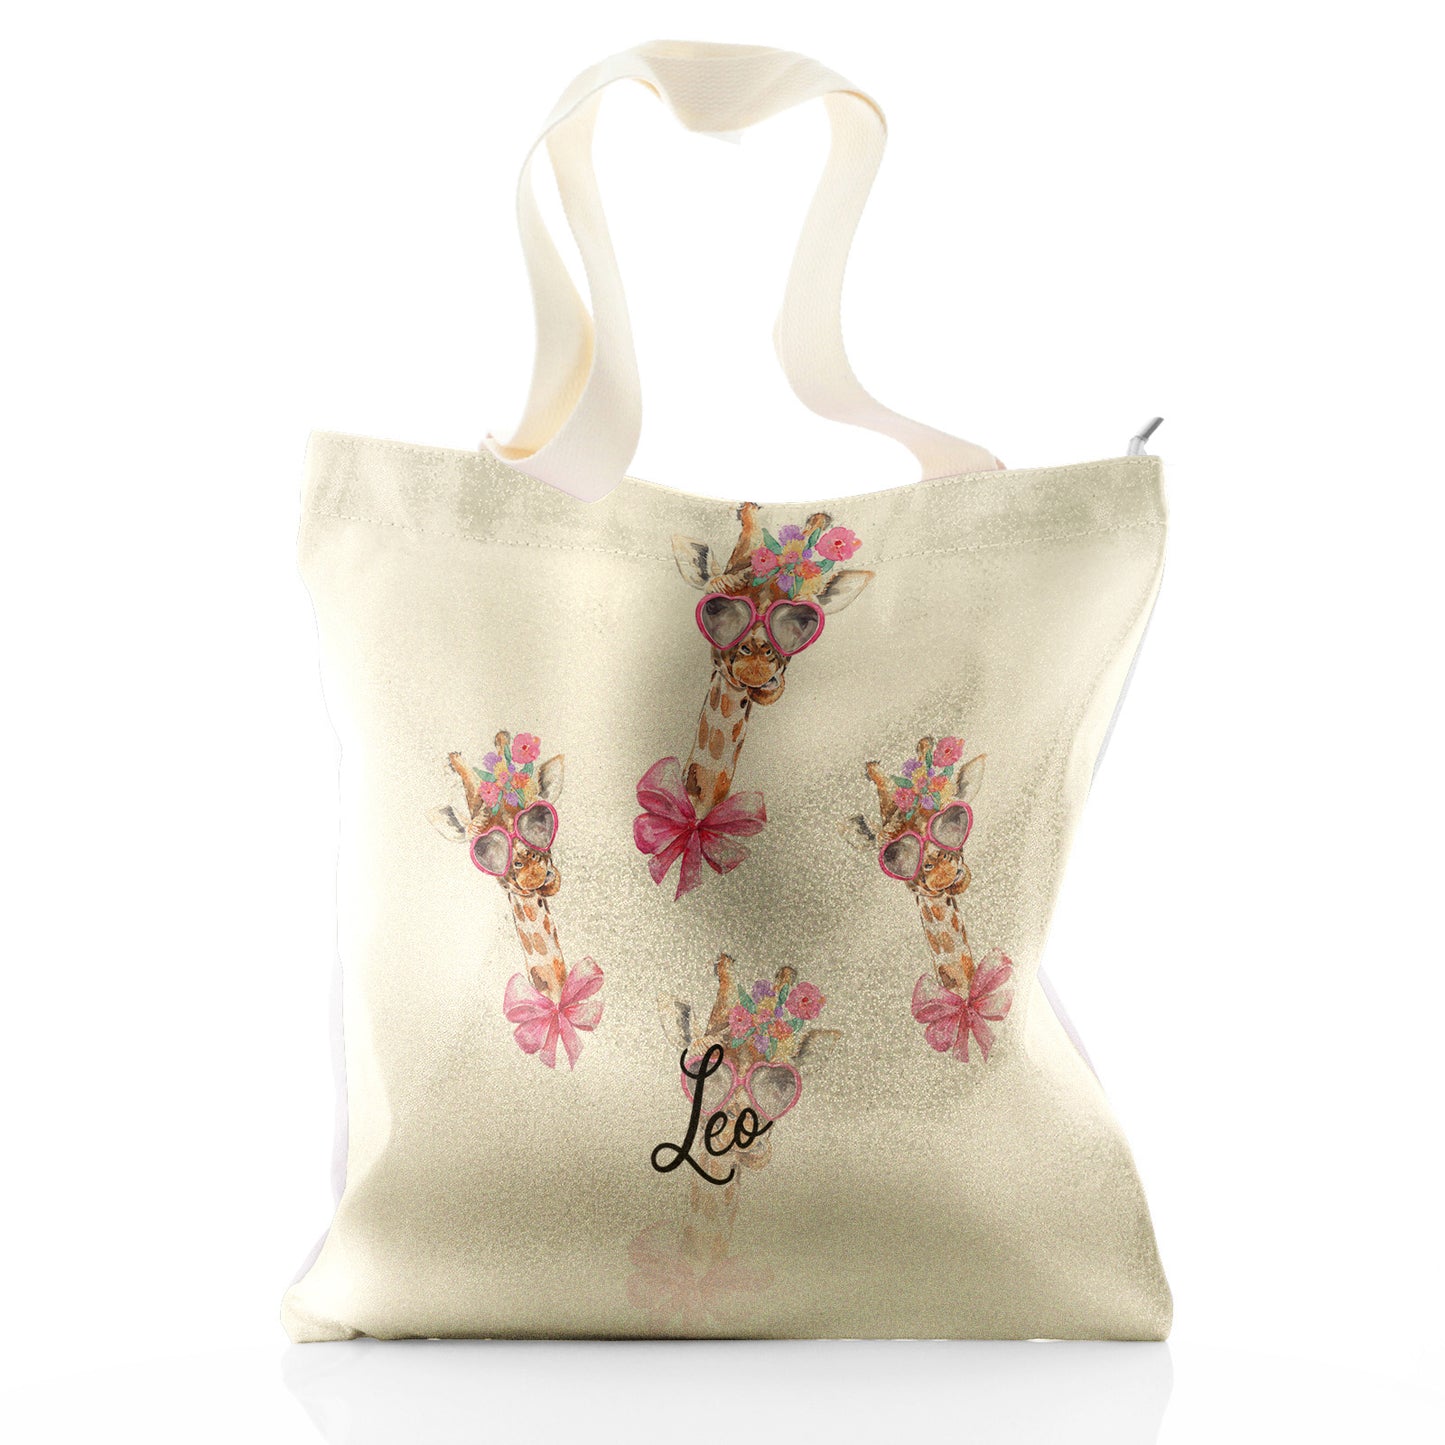 Personalisierte Glitzer-Einkaufstasche mit Giraffen-Rosa-Schleife, mehrfarbigen Blumen und niedlichem Text